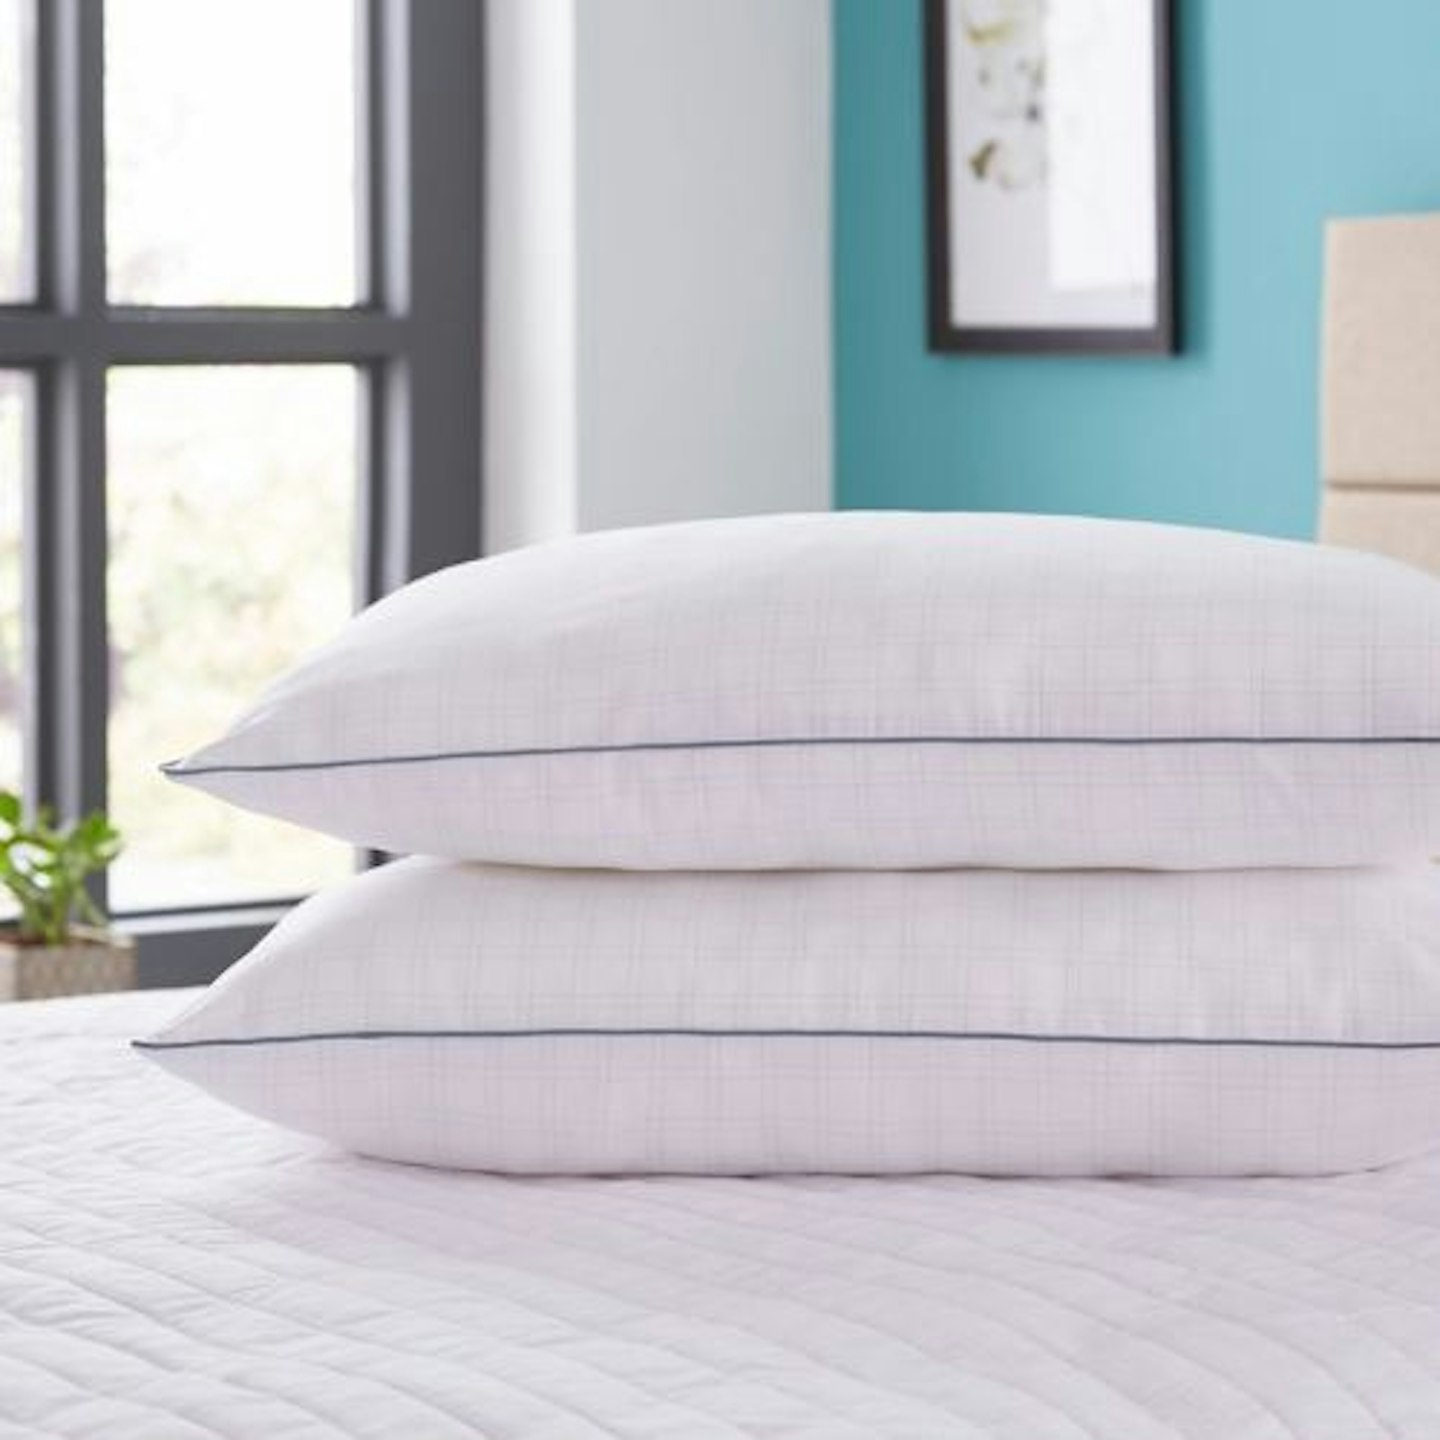 Silentnight Re-Balance Wellbeing Pillows